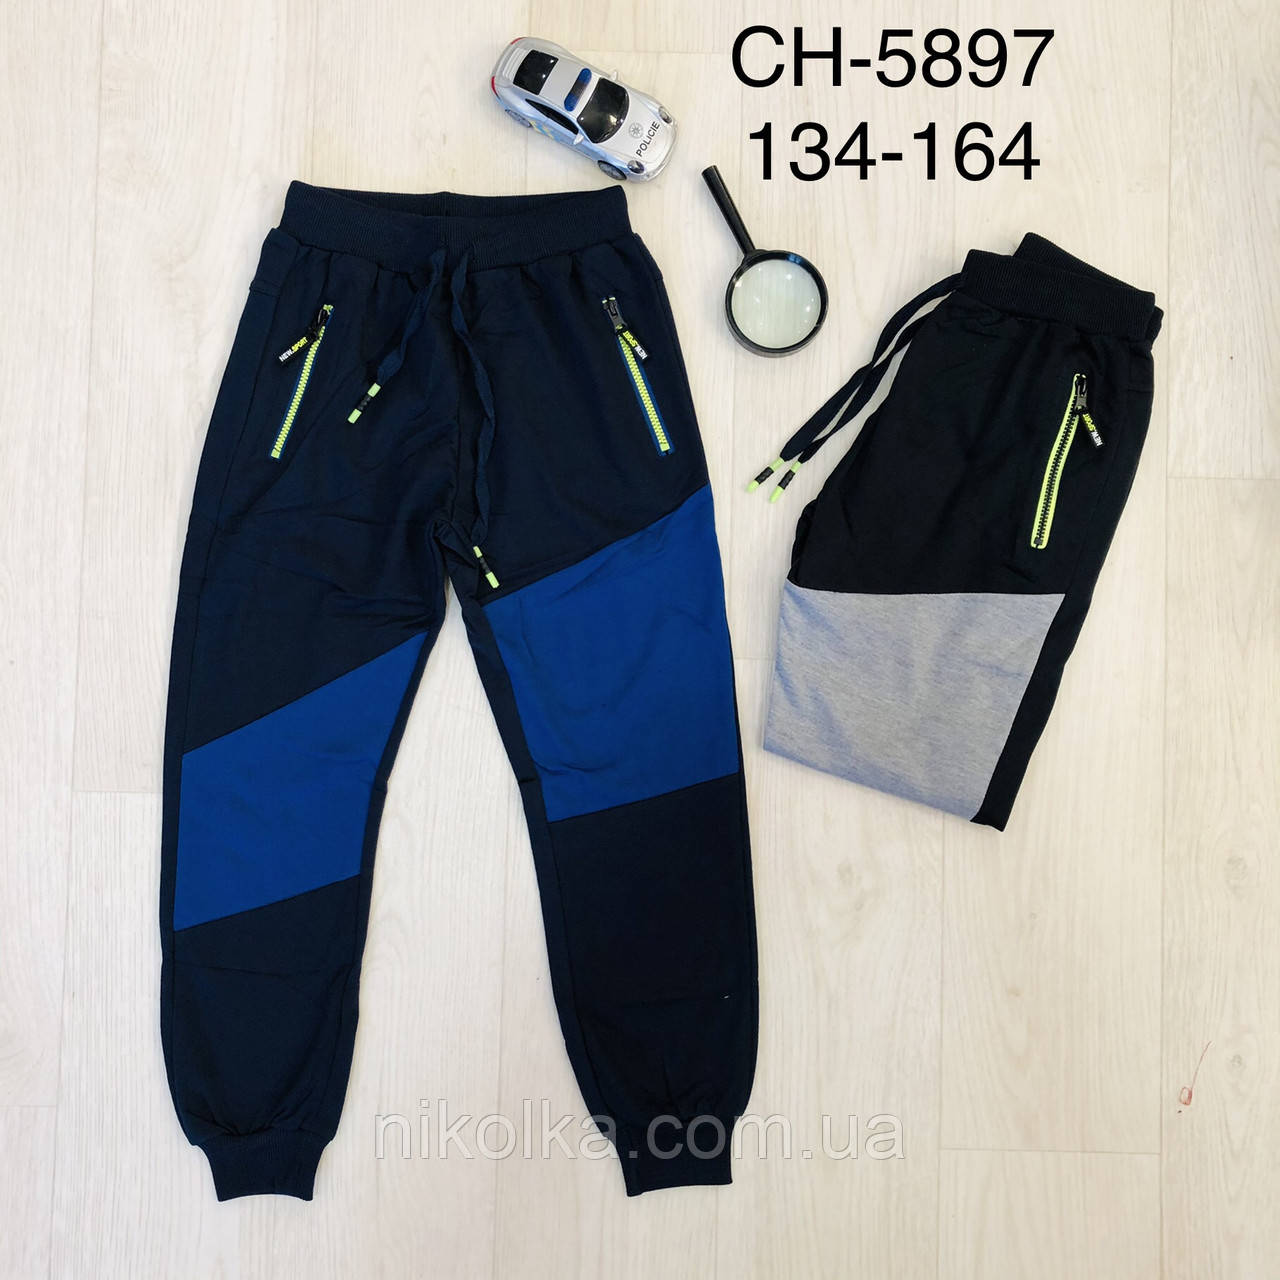 Спортивні штани на хлопчика оптом, S&D, 134-164 рр., арт. CH-5897